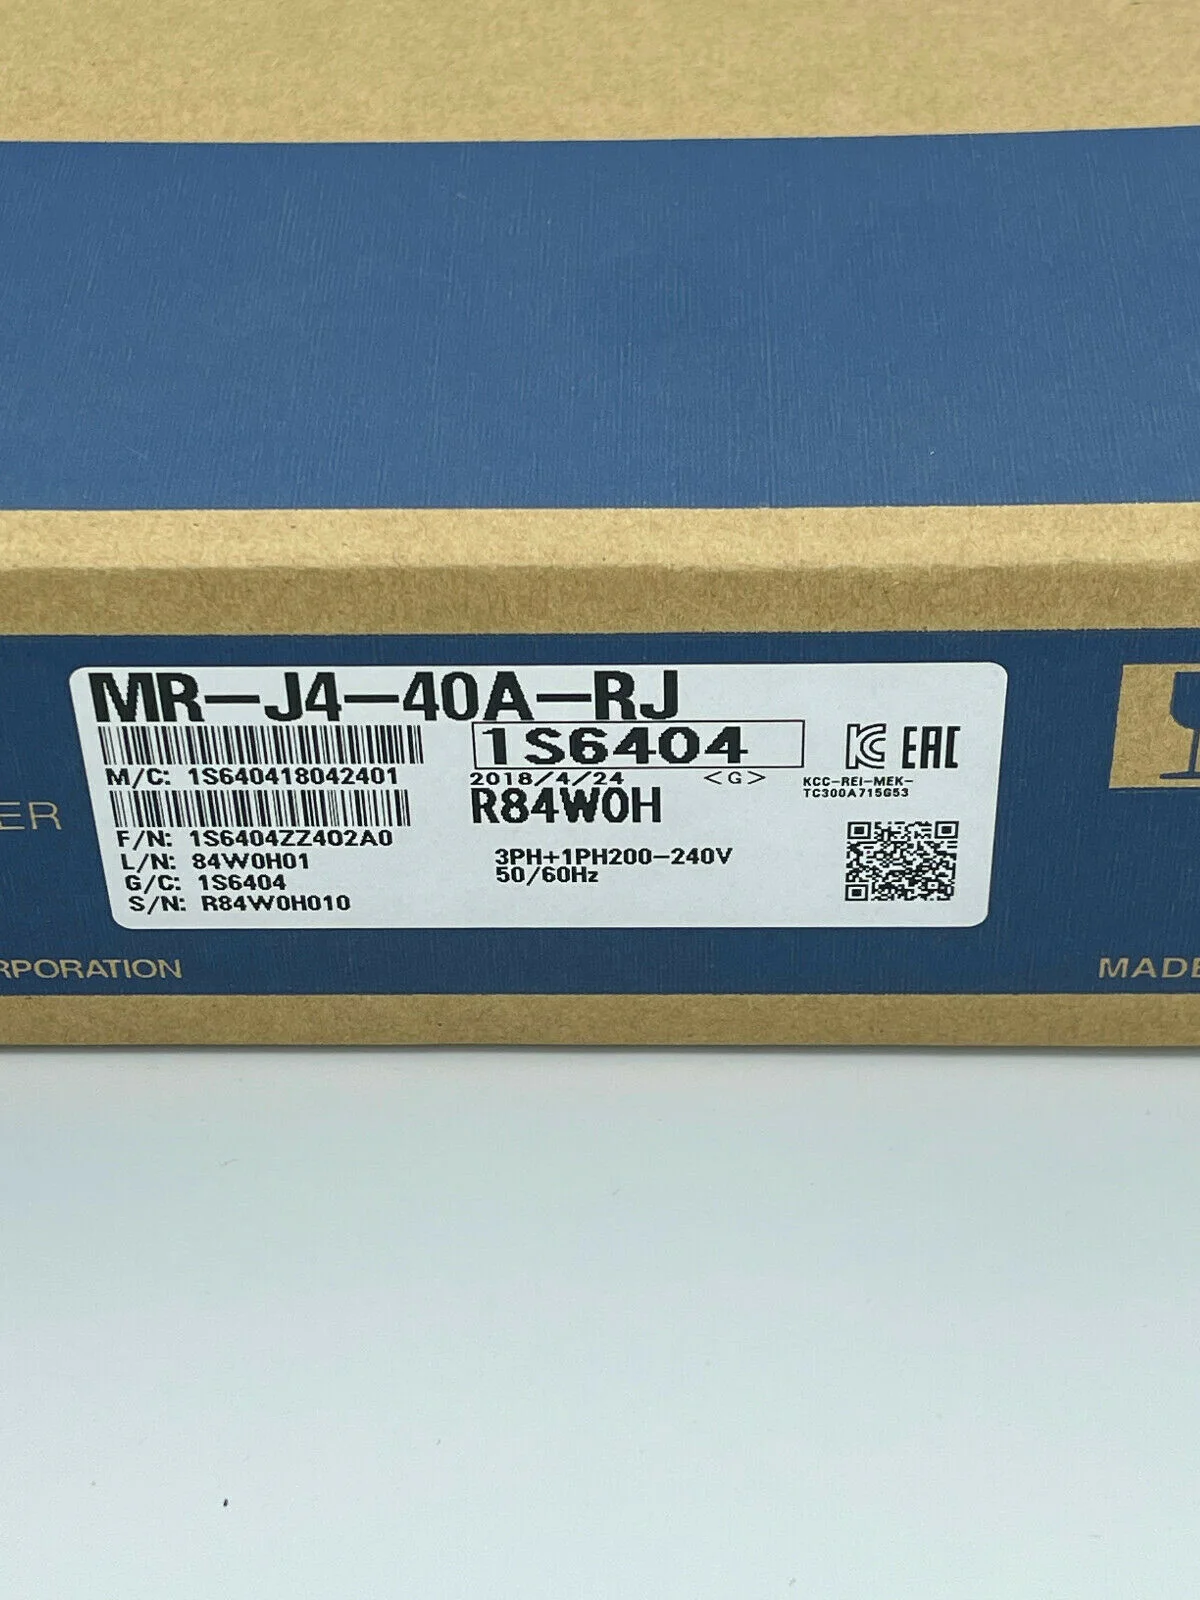 

MR-J4-40A-RJ Servo Amplifier New In Box Warranty 1 Year Fast Shipping